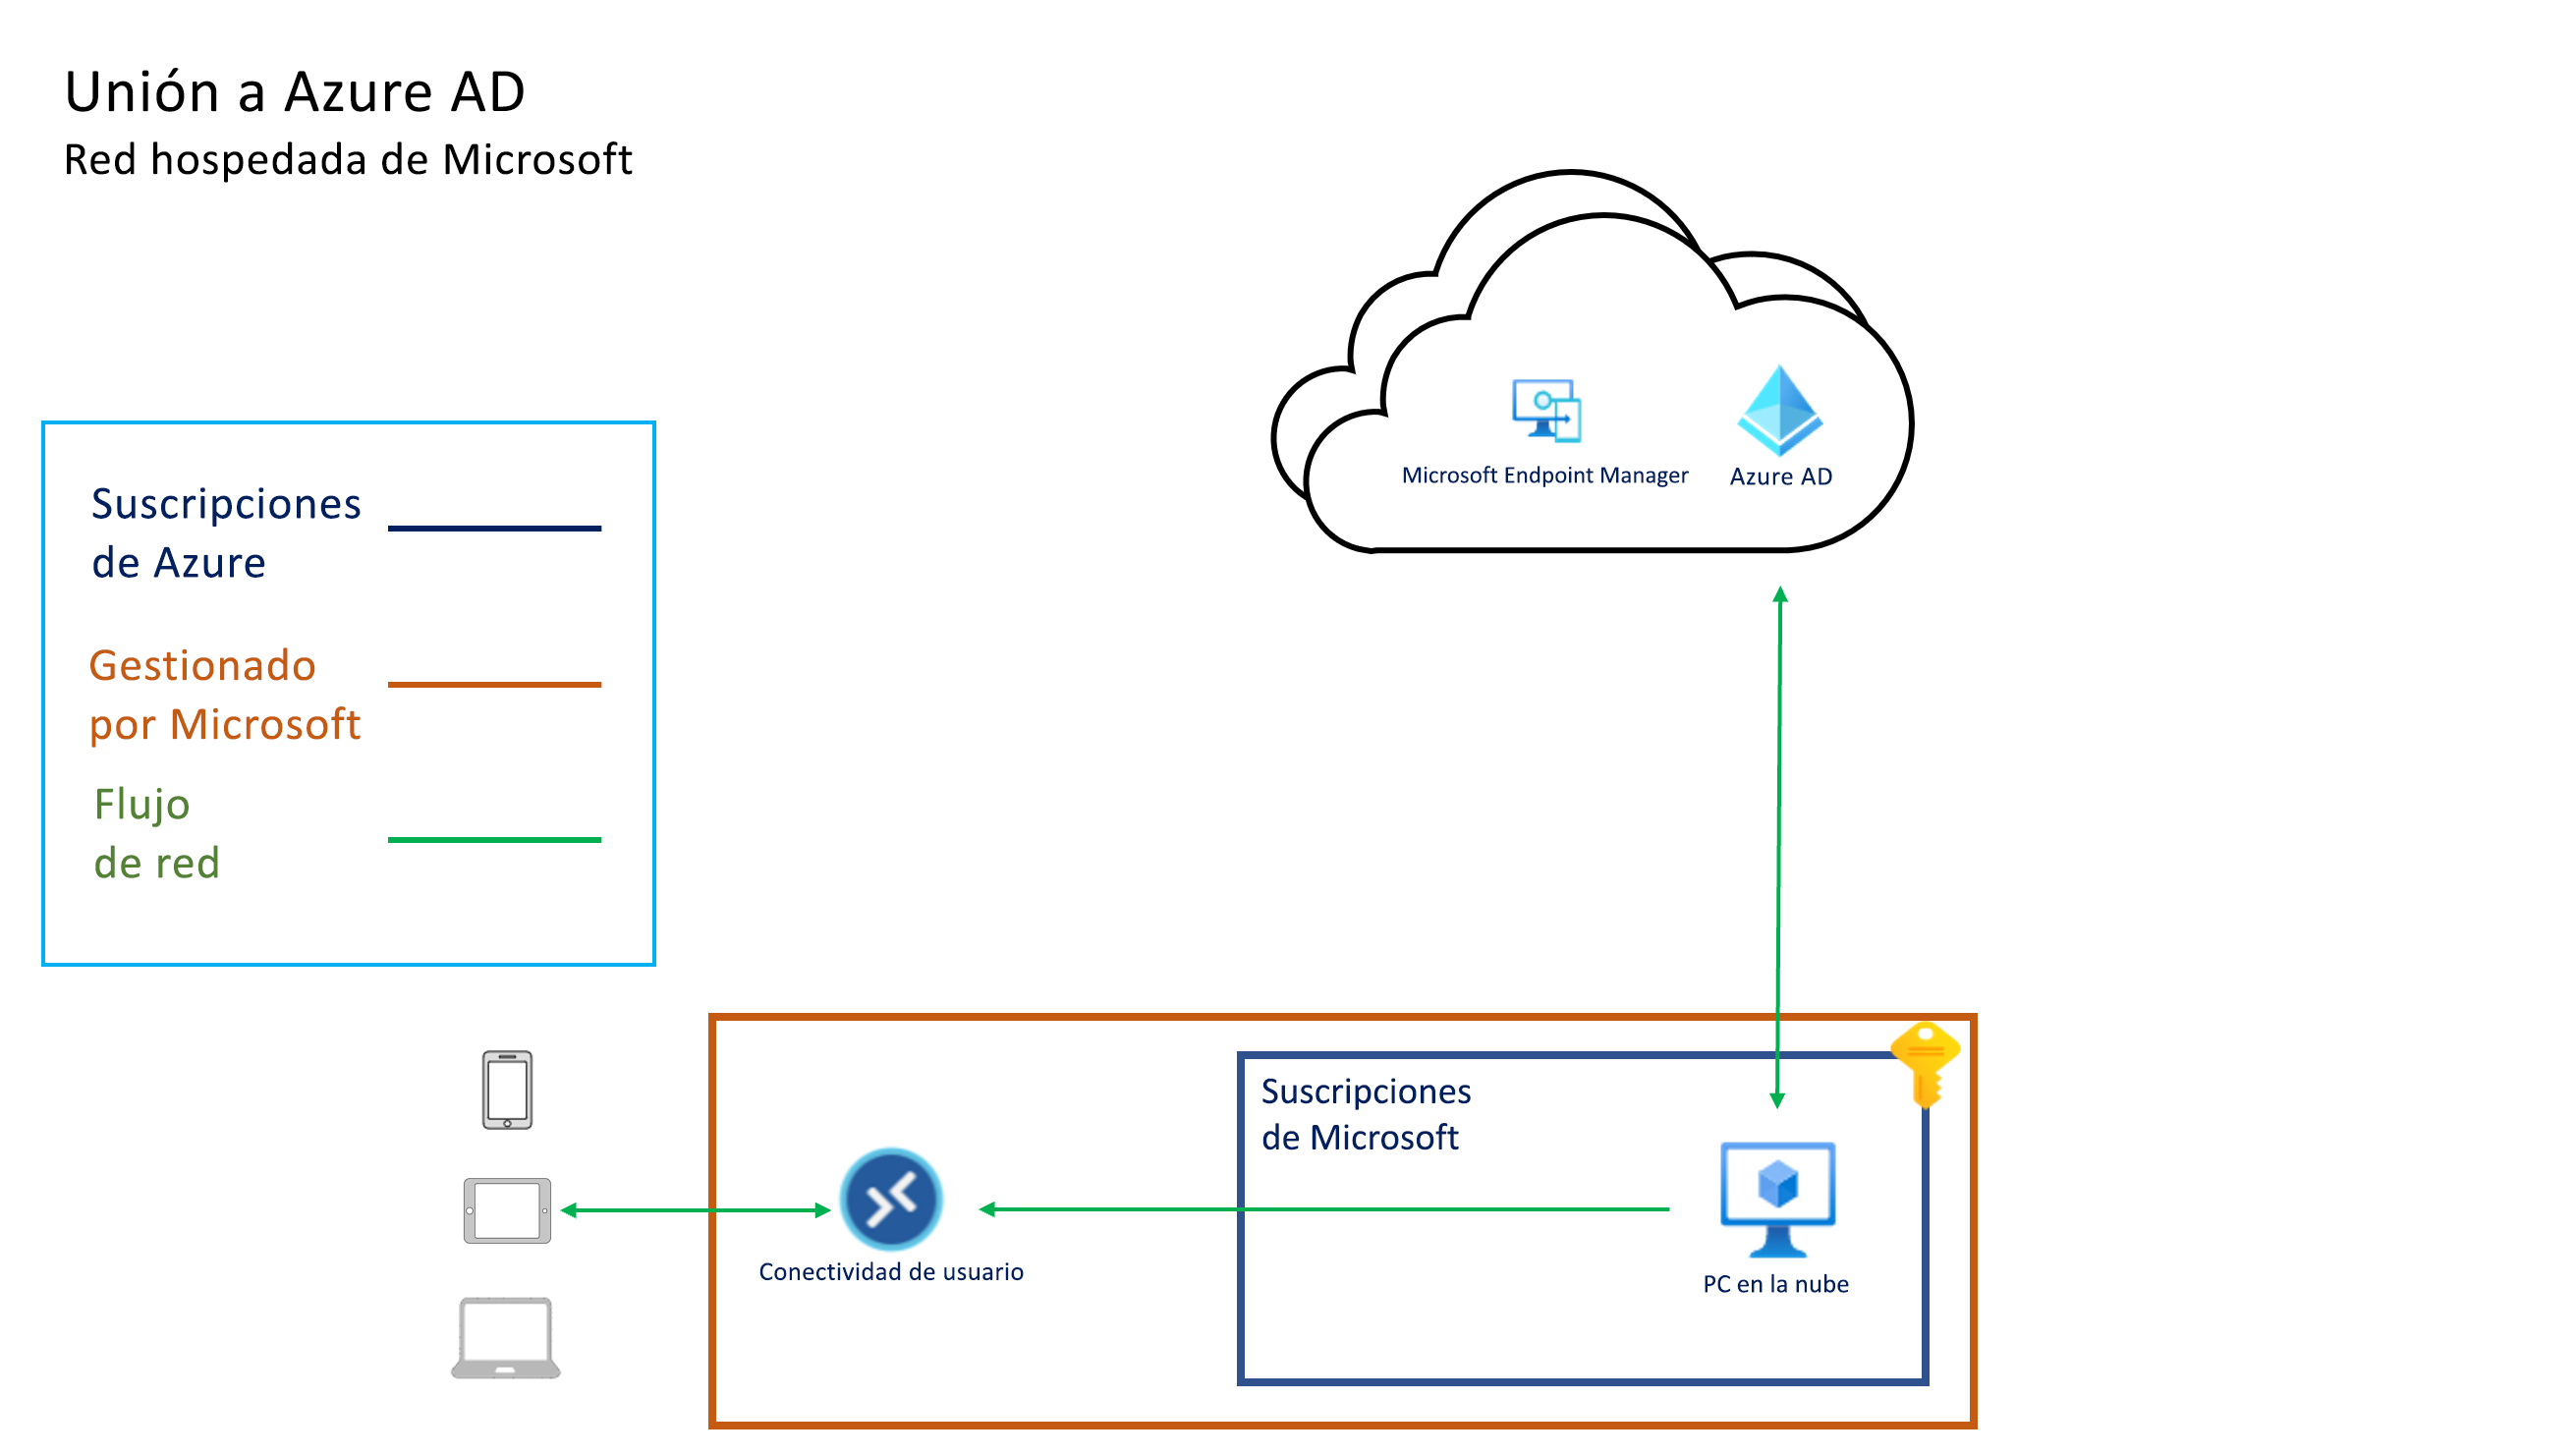 Captura de pantalla de la arquitectura de combinación de Microsoft Entra con la red hospedada de Microsoft